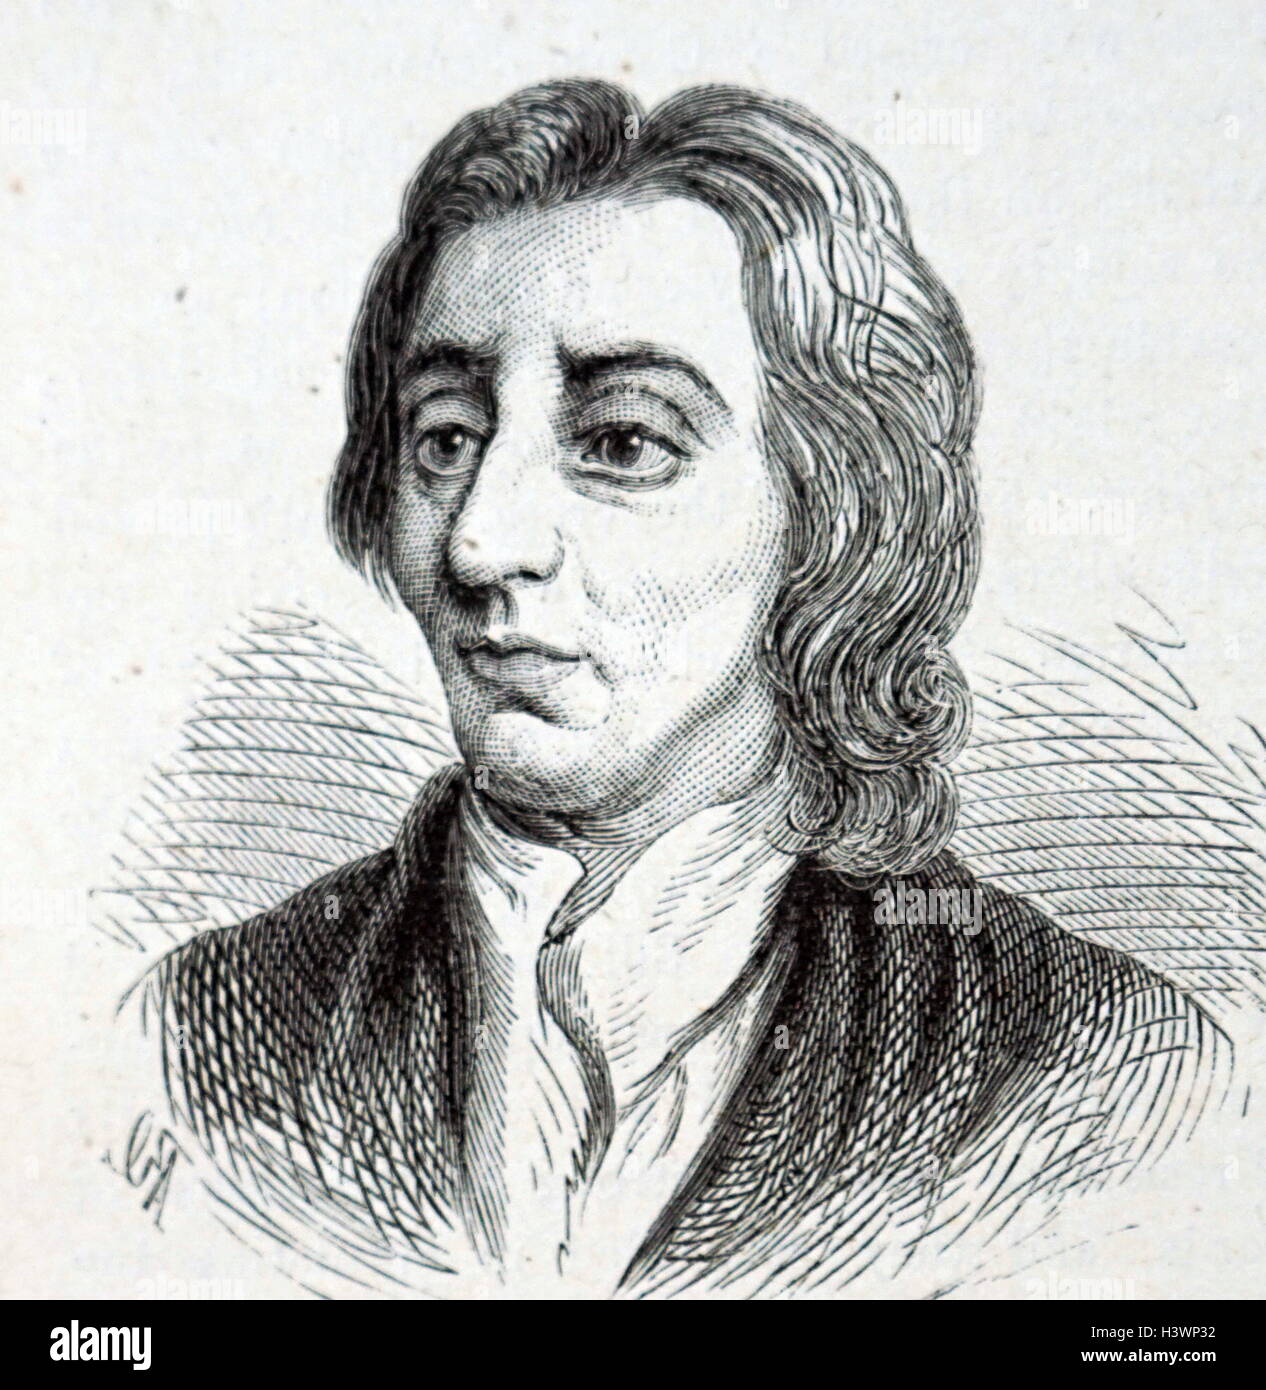 Retrato grabado de John Locke (1632-1704), médico y filósofo inglés, conocido como el "padre del liberalismo". Fecha Siglo xvii Foto de stock